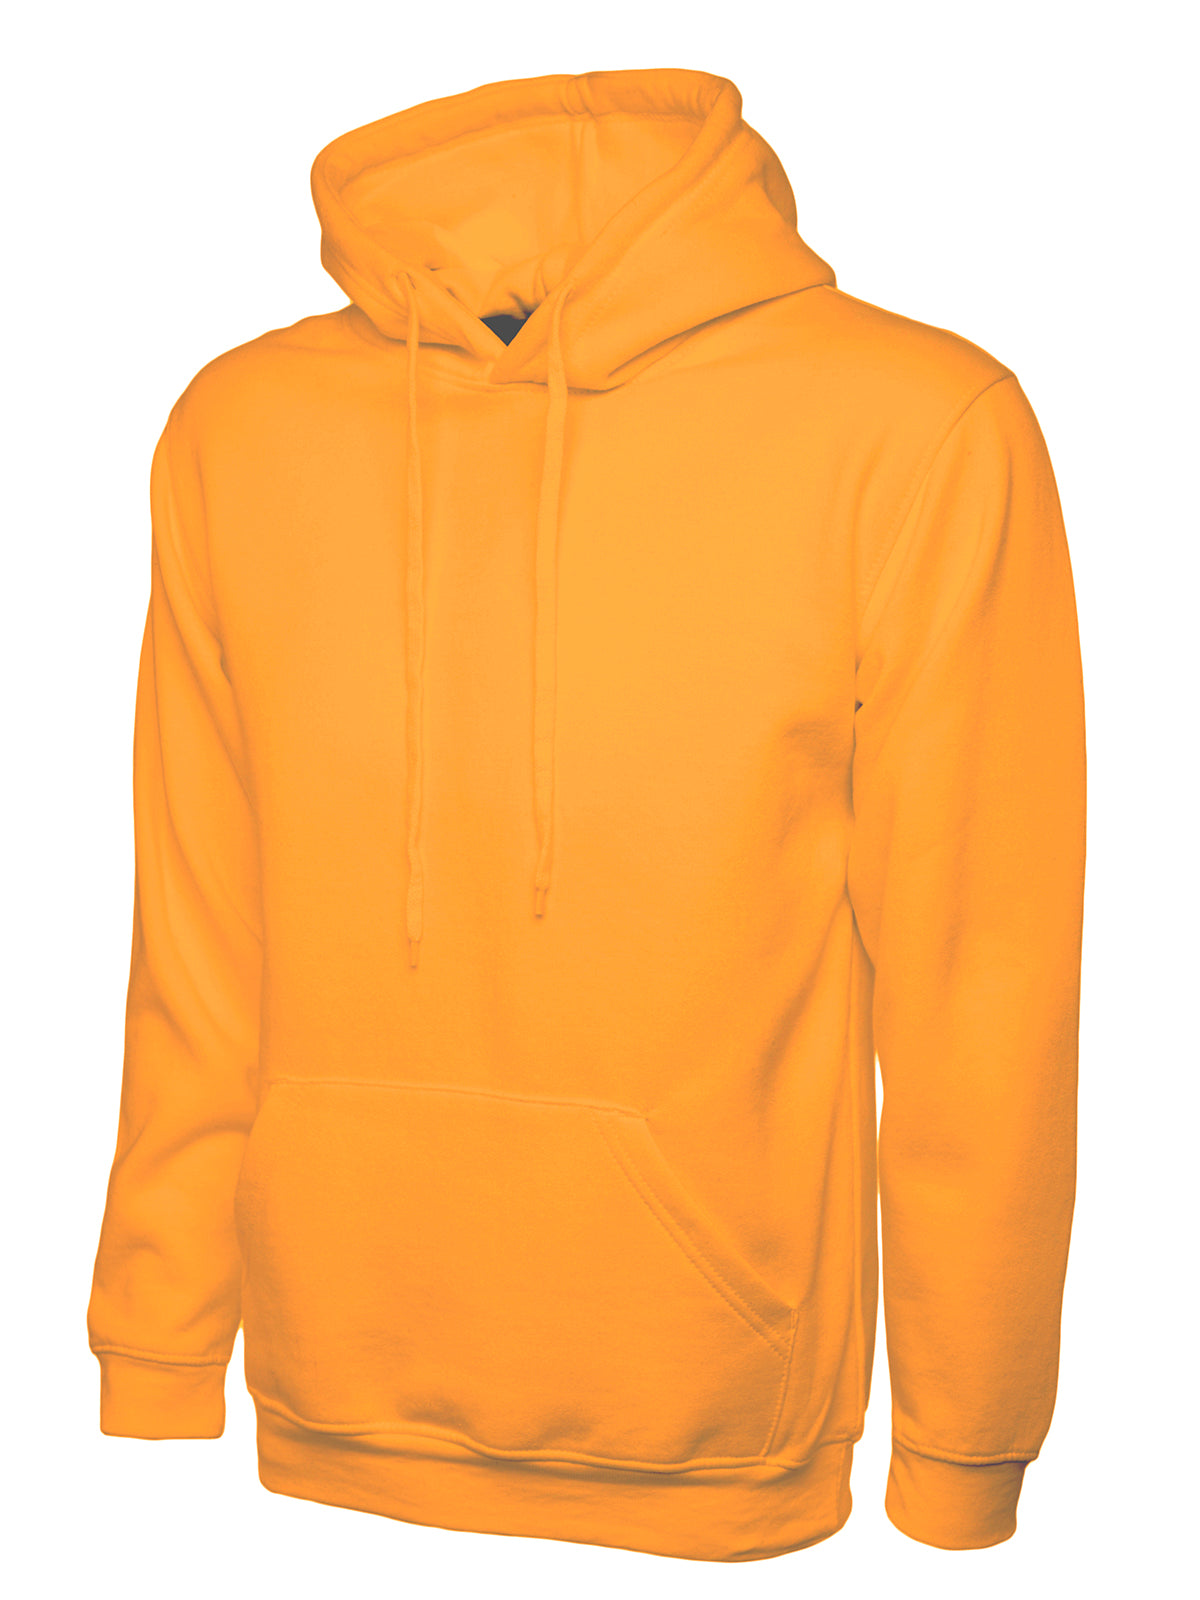 Uneek Classic Hoodie Sweatshirt - Orange